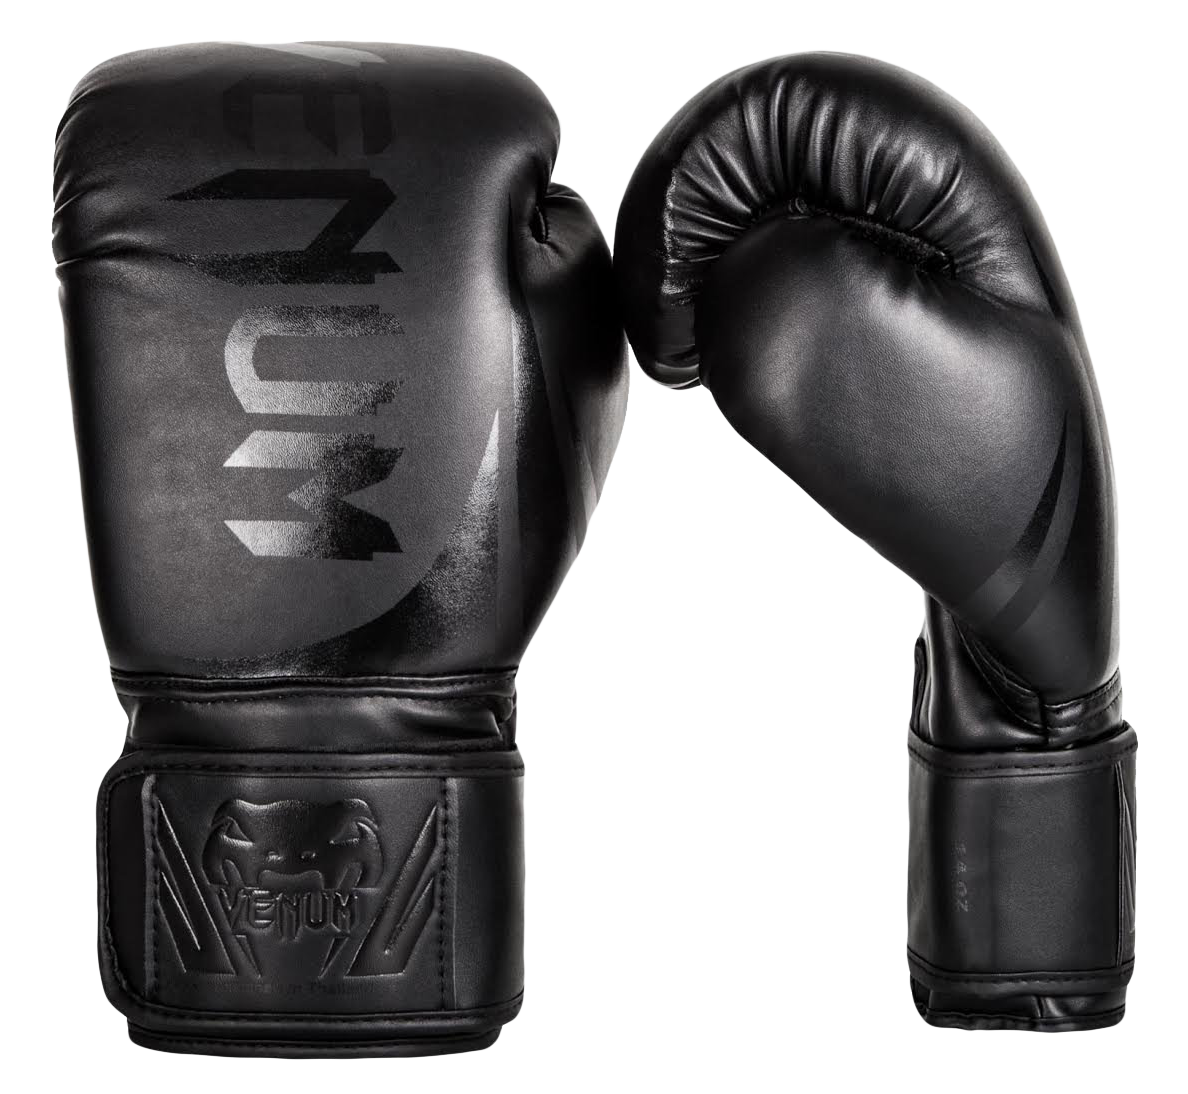 Black Venum Boxing Gloves PNG image